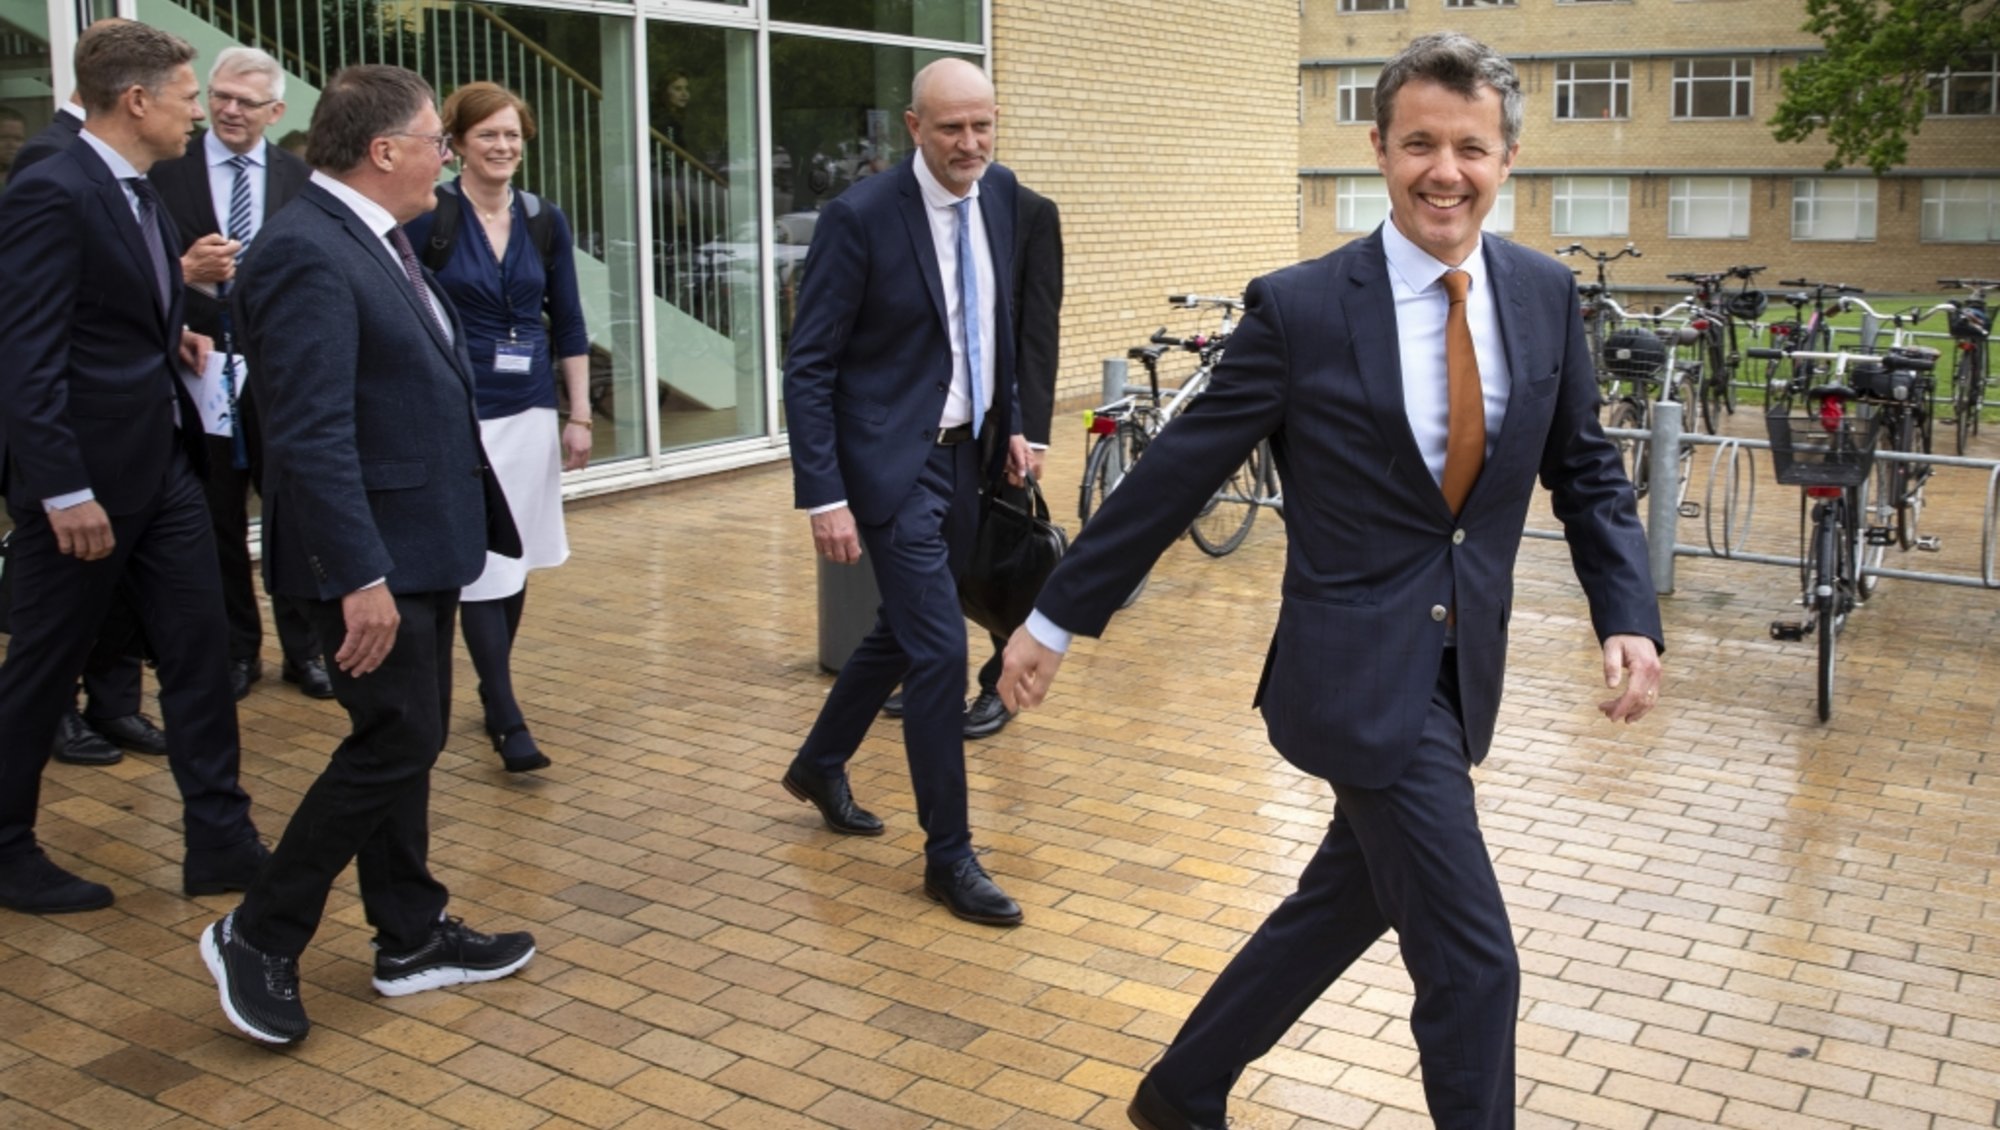 Kronprins Frederik er på vej ud af Søauditorierne ved Aarhus Universitet efter deltagelse i konferencen Matchpoints.